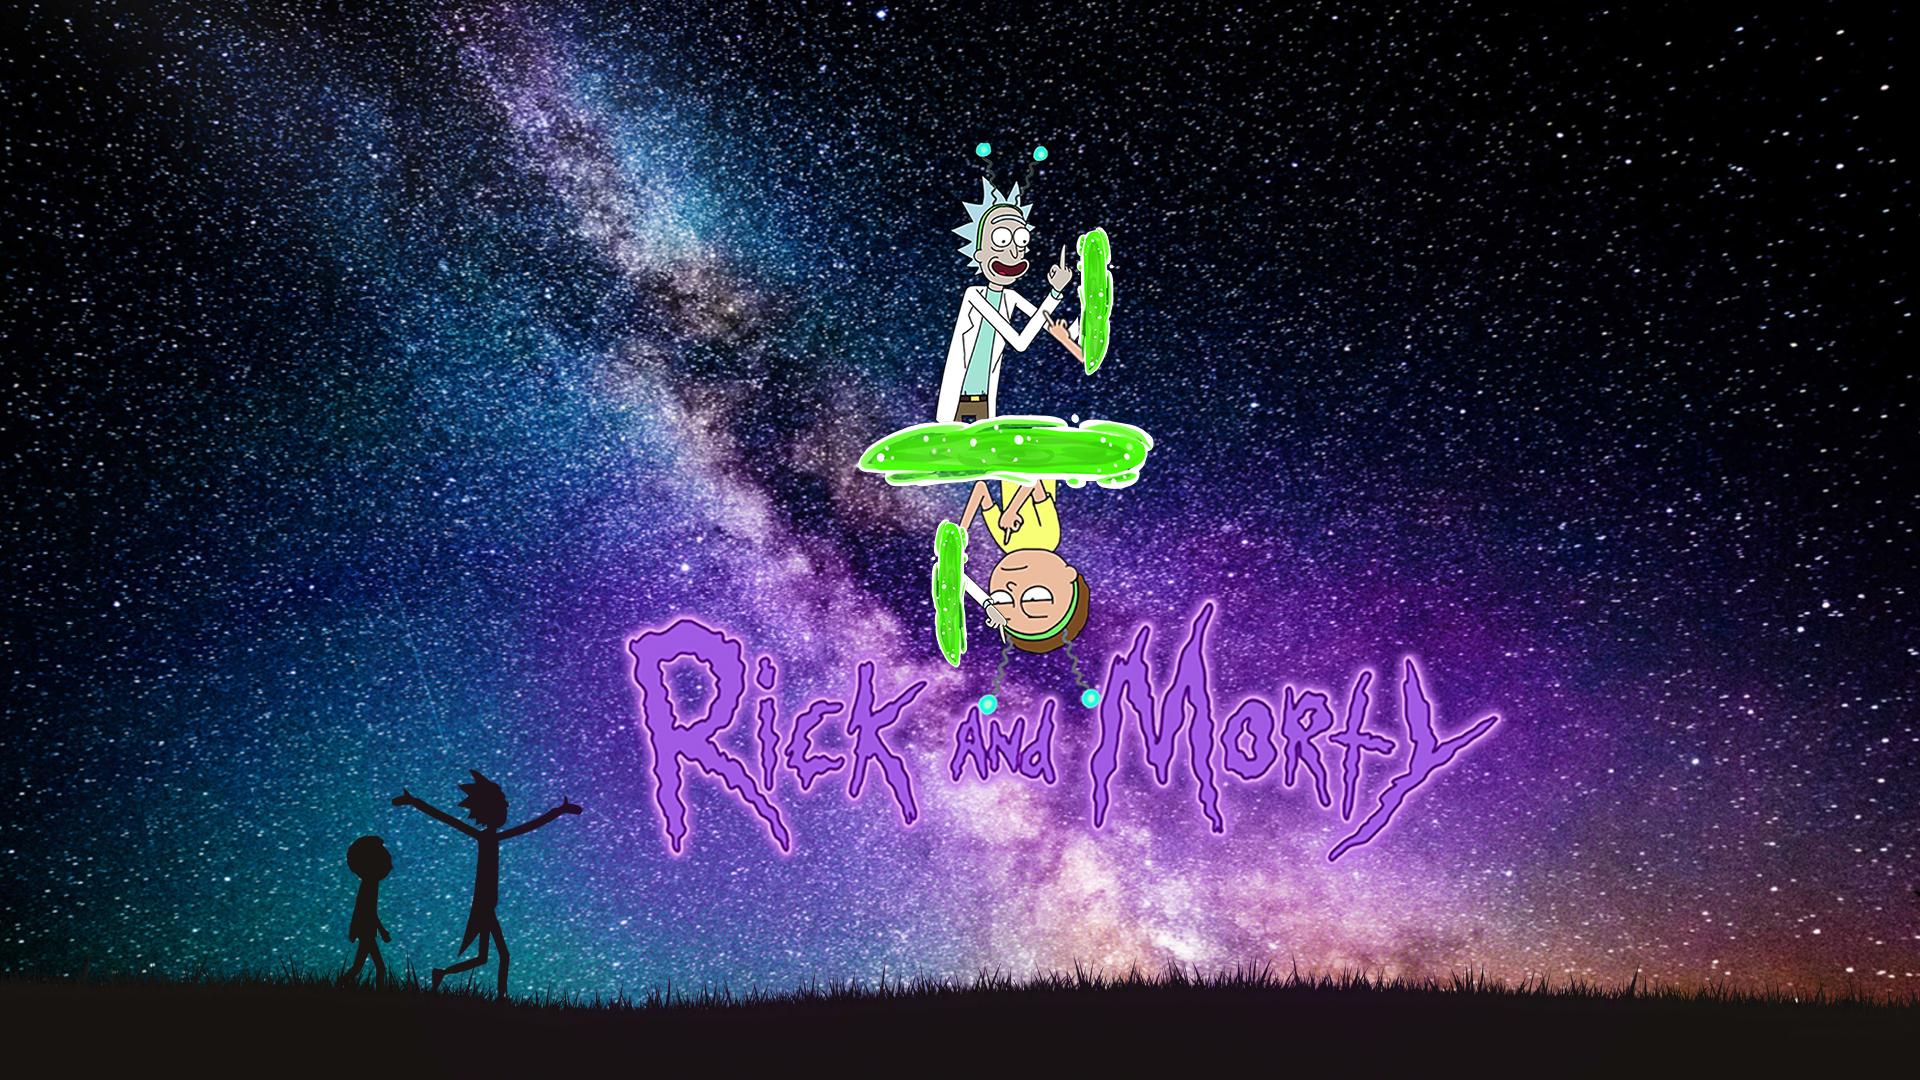 Fondos de Rick y Morty - Los mejores fondos de Rick y Morty gratis